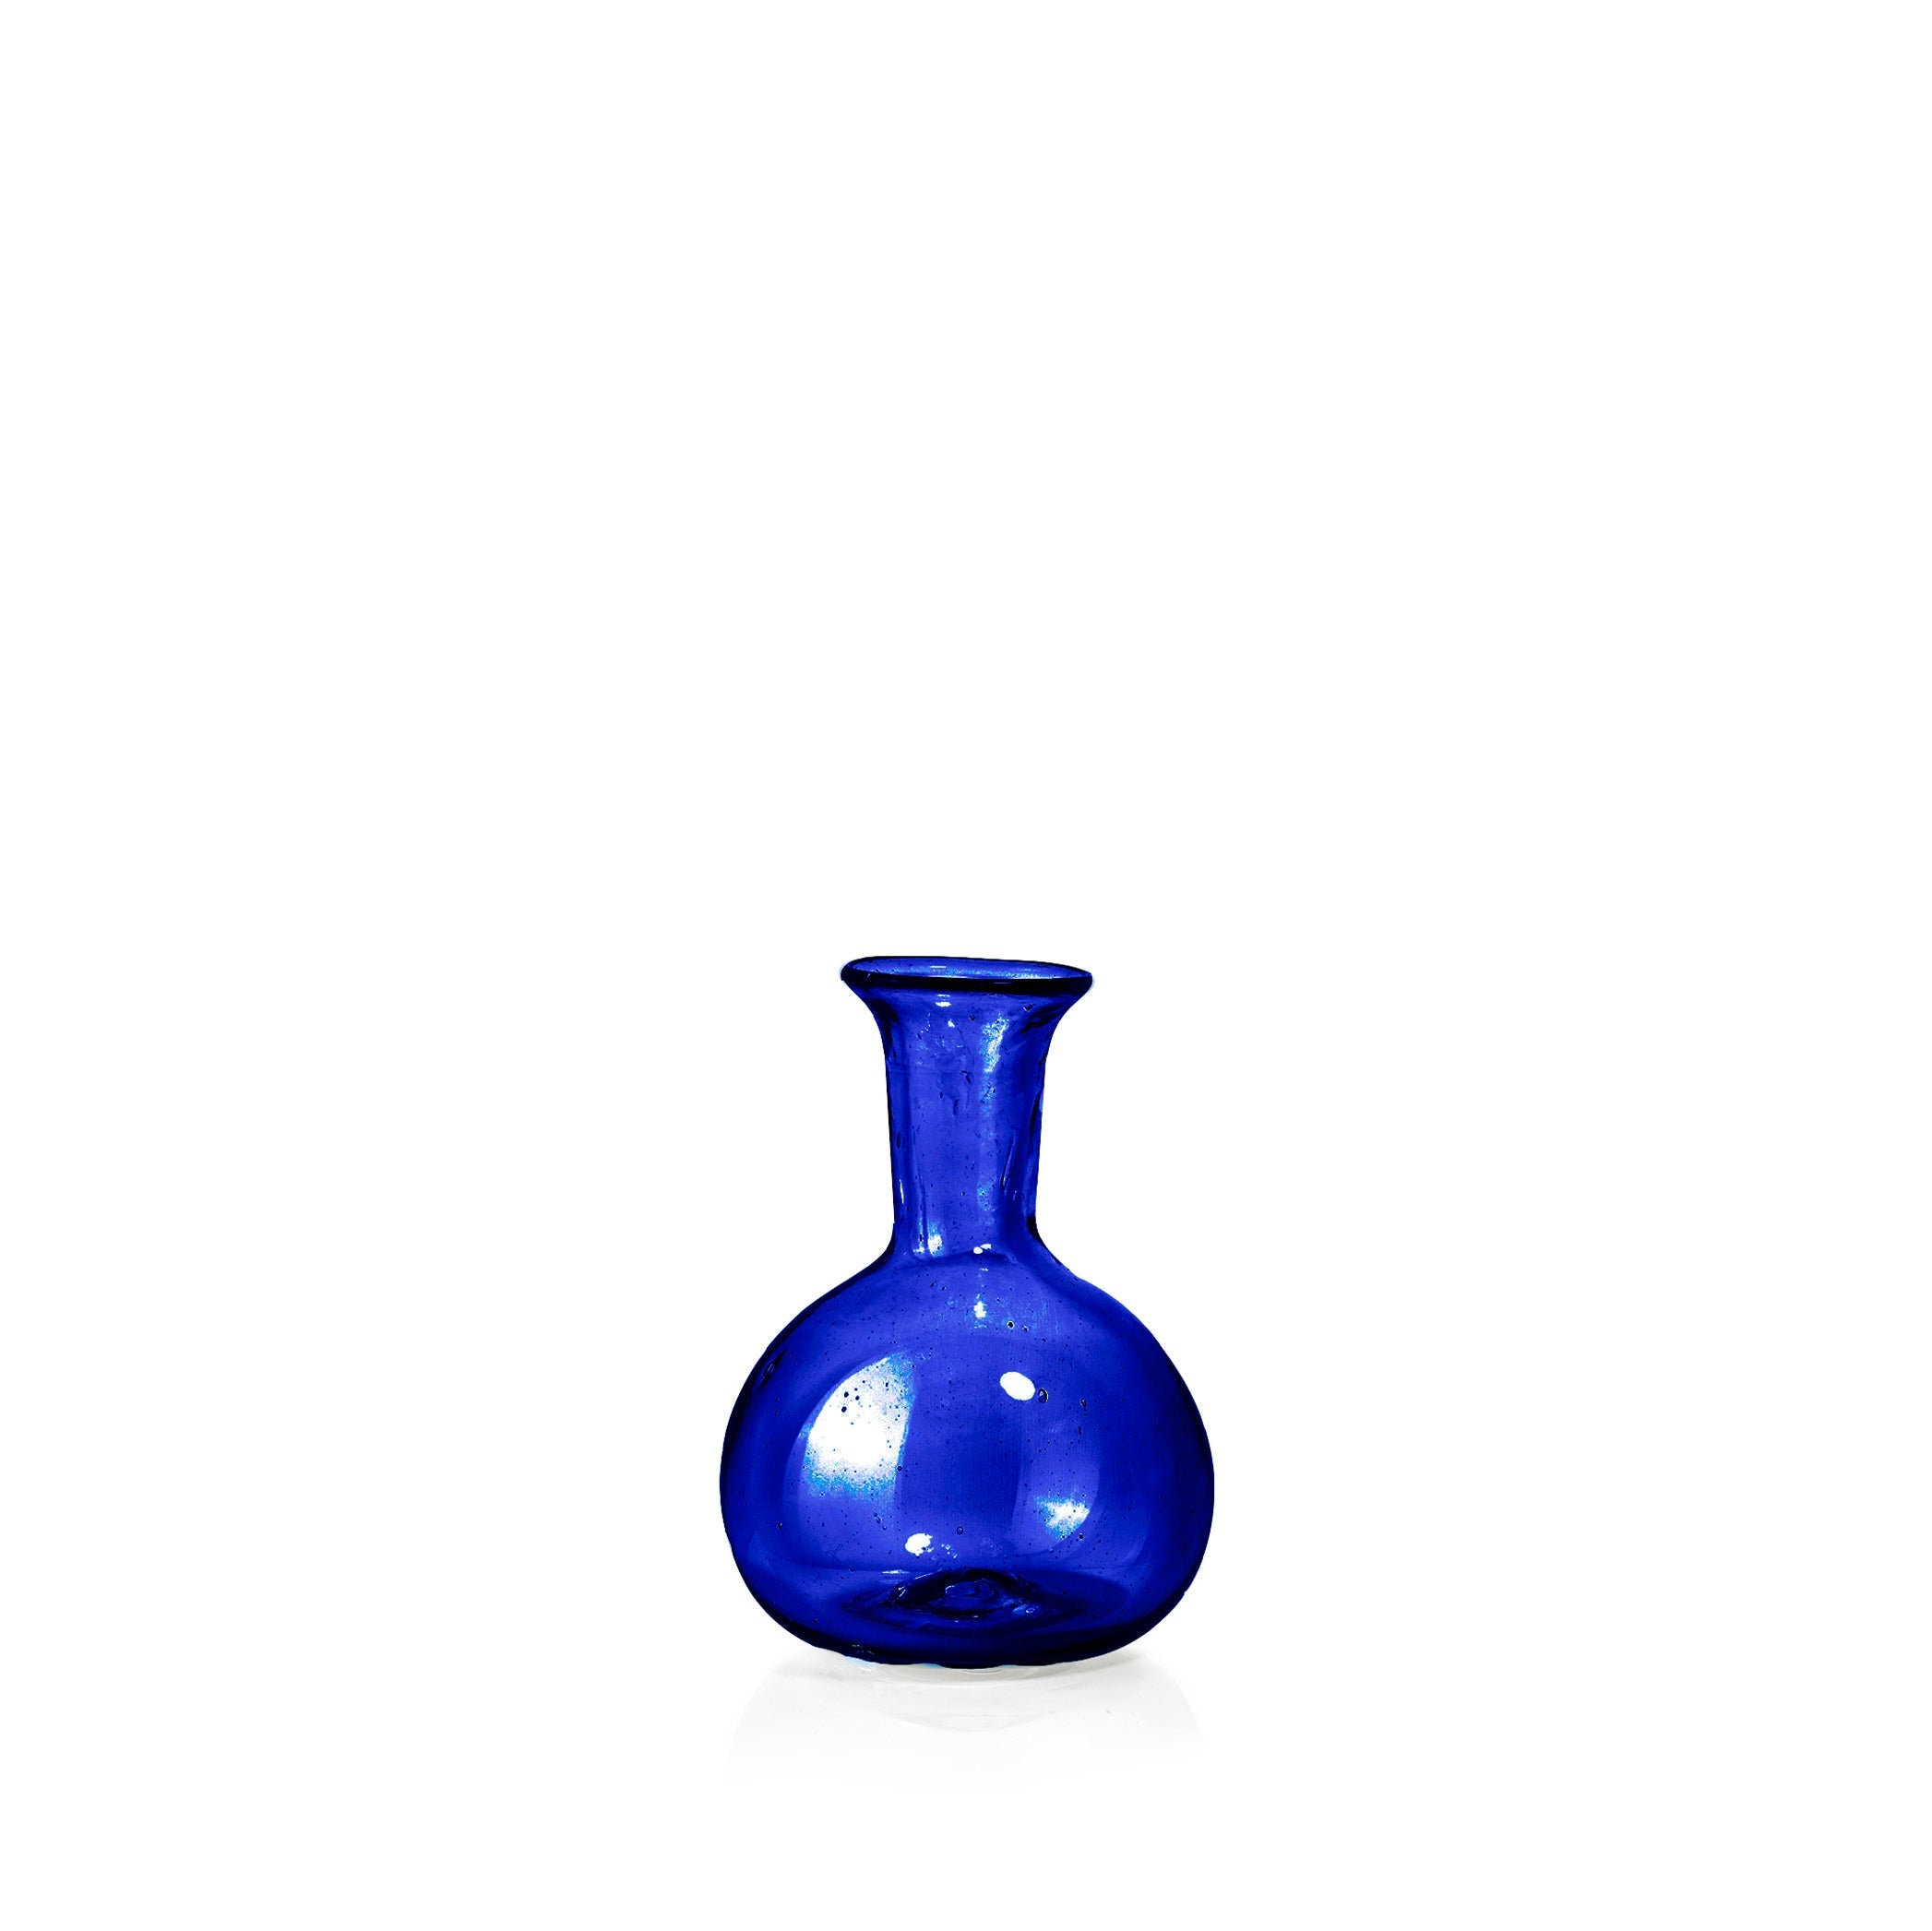 Handblown Small Round Bud Vase in Cobalt Blue, 9cm